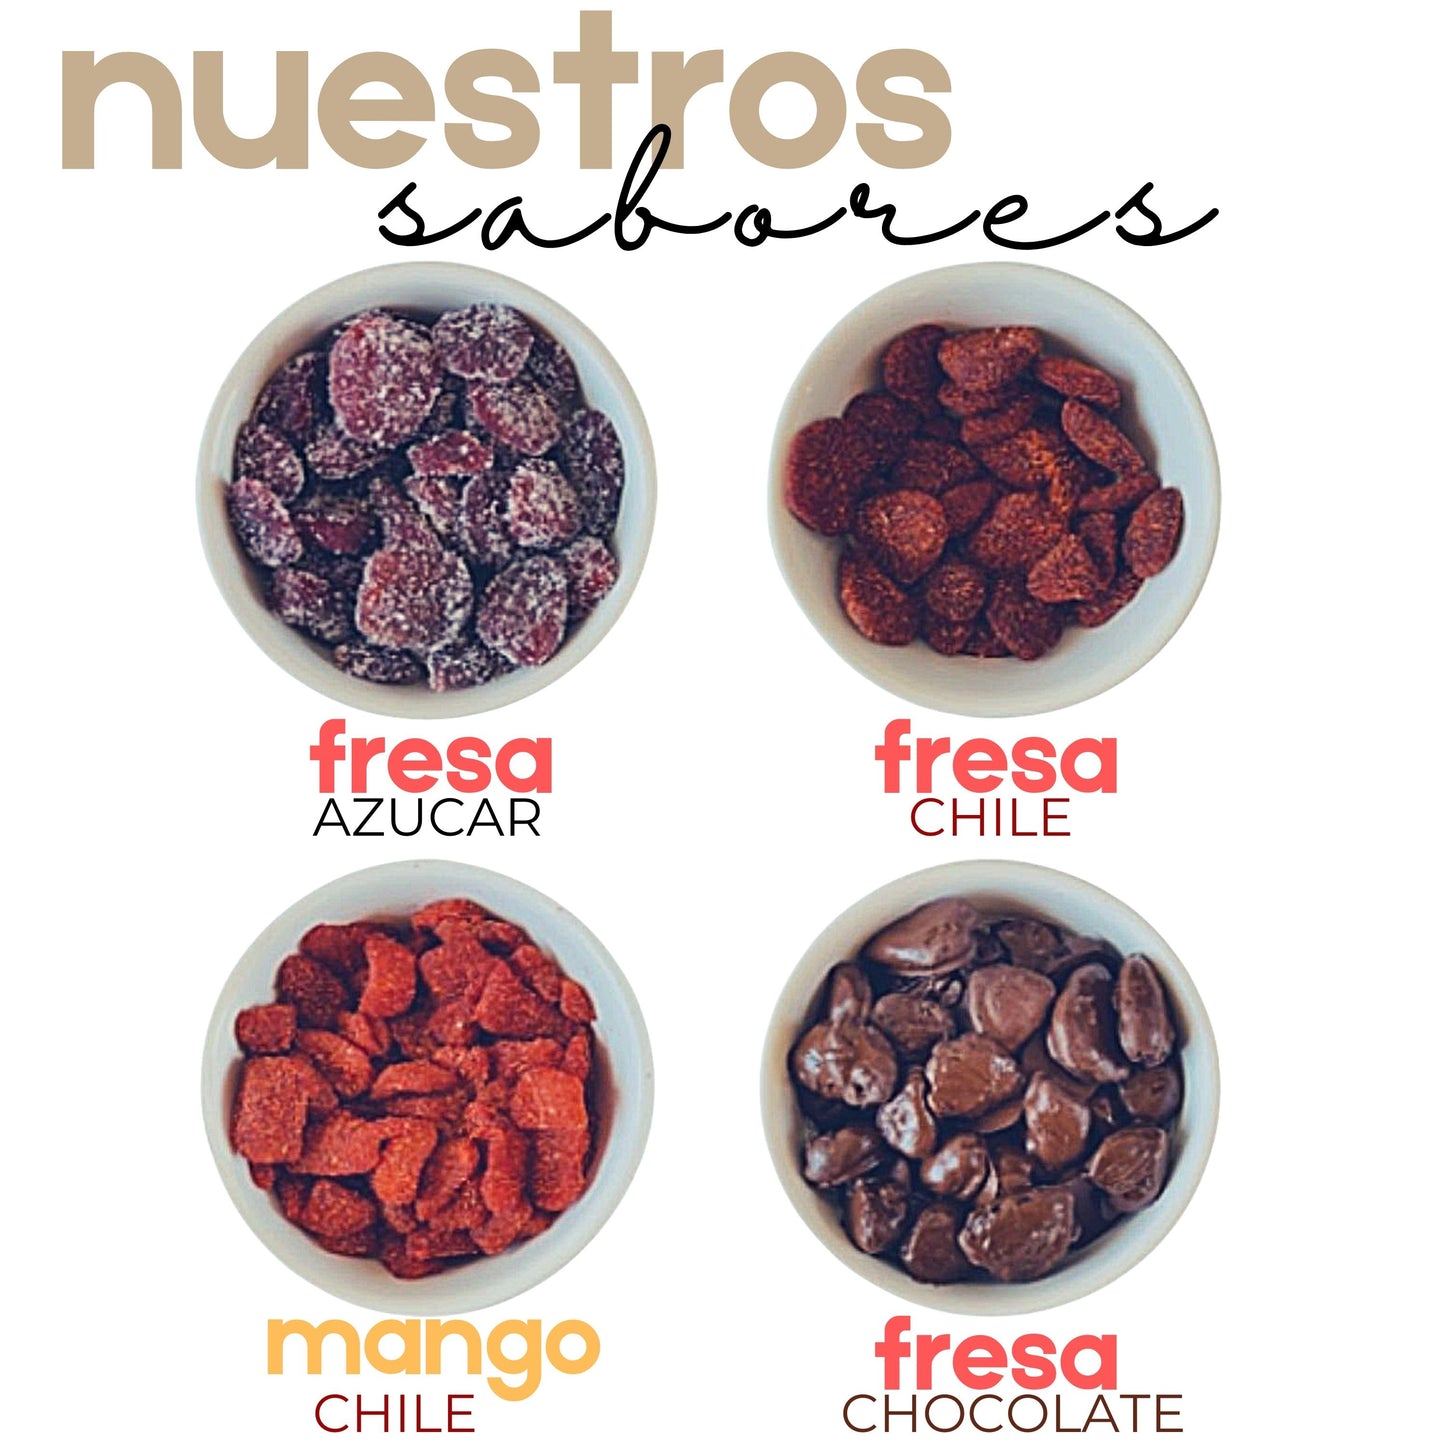 Fresas con chocolate | Fresas Cristalizadas | Gourmet | 250g | Mexpofood